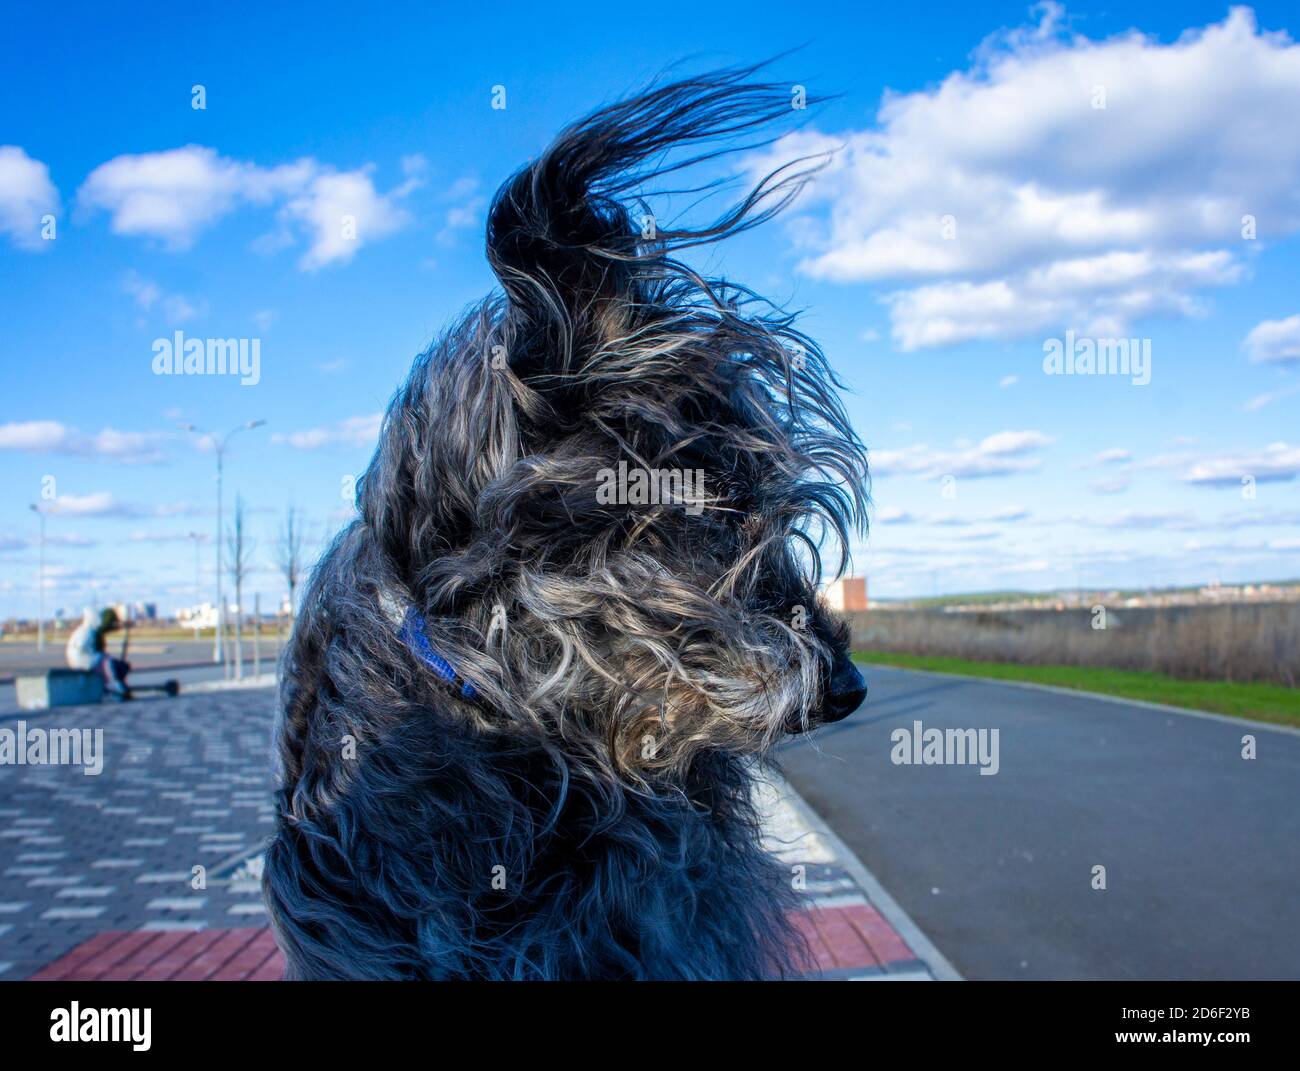 Flauschiger grauer Hund mit fliegenden Haaren im Wind Gegen einen blau bewölkten Himmel Stockfoto